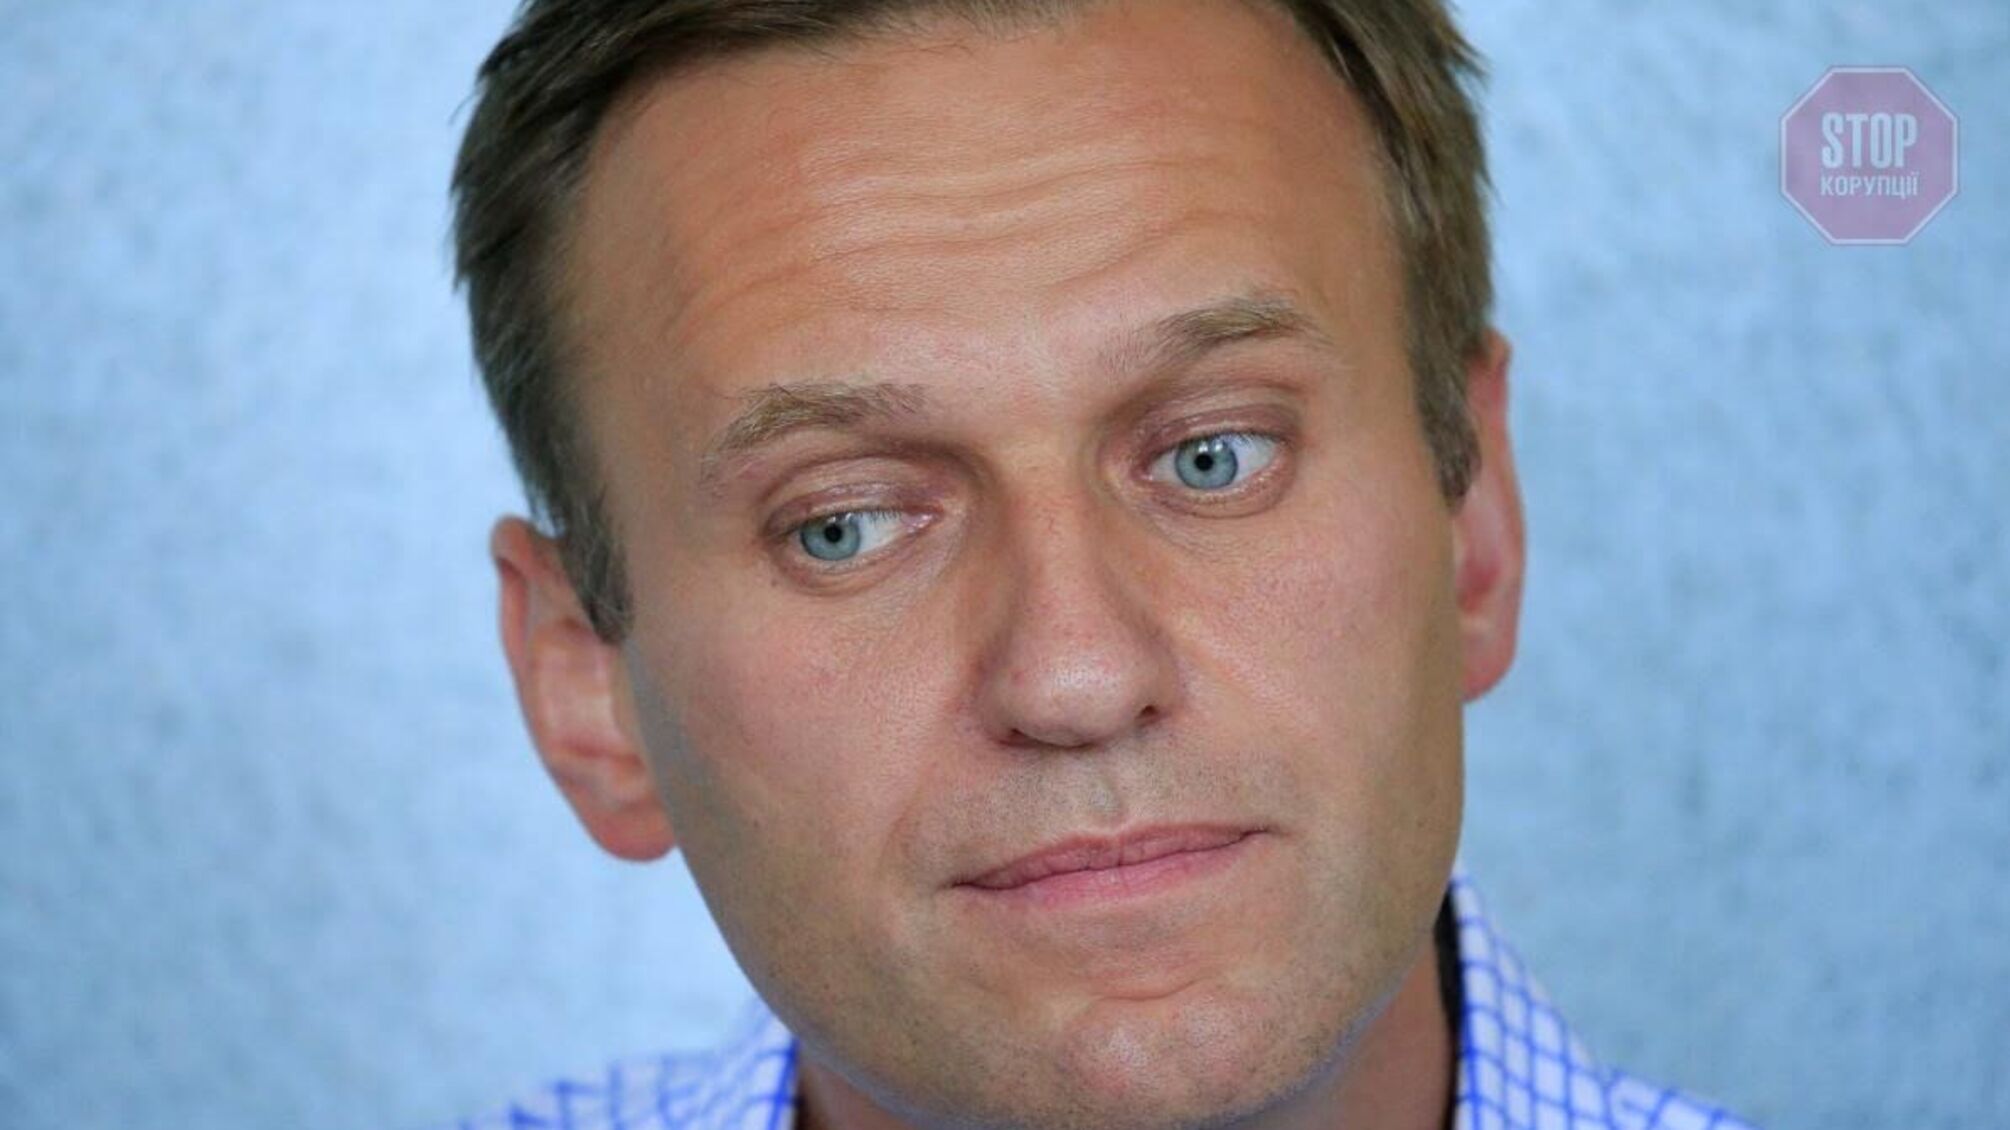 Отруєння опозиціонера Навального: Британія ввела санкції проти співробітників ФСБ Росії